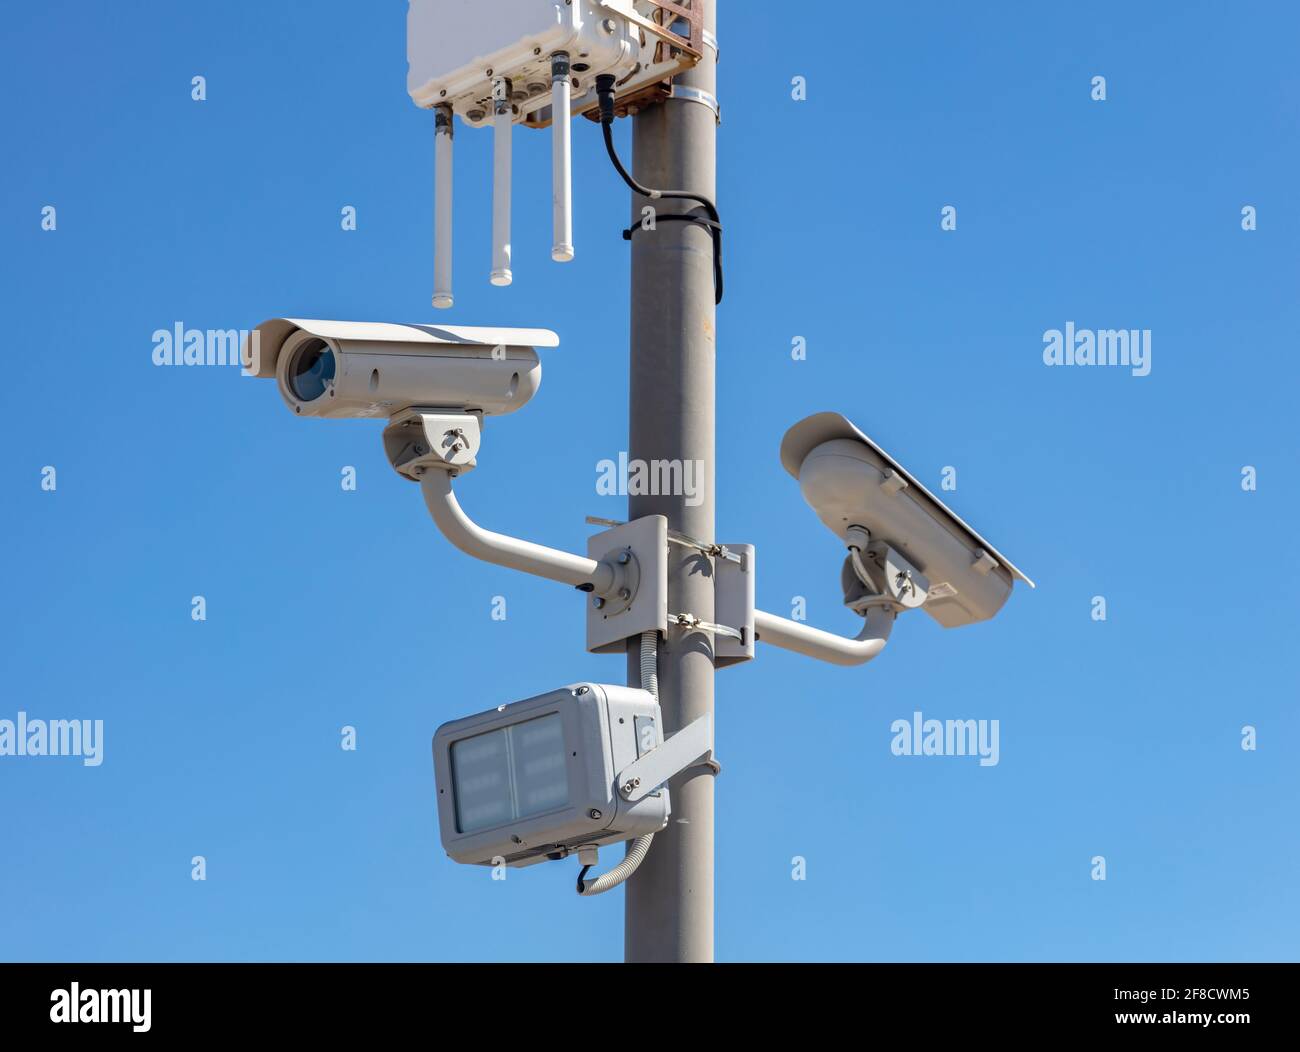 Caméra de vidéosurveillance. Caméras de surveillance haute résolution et antenne wi-fi, fond bleu ciel. Confidentialité, protection de la propriété Banque D'Images